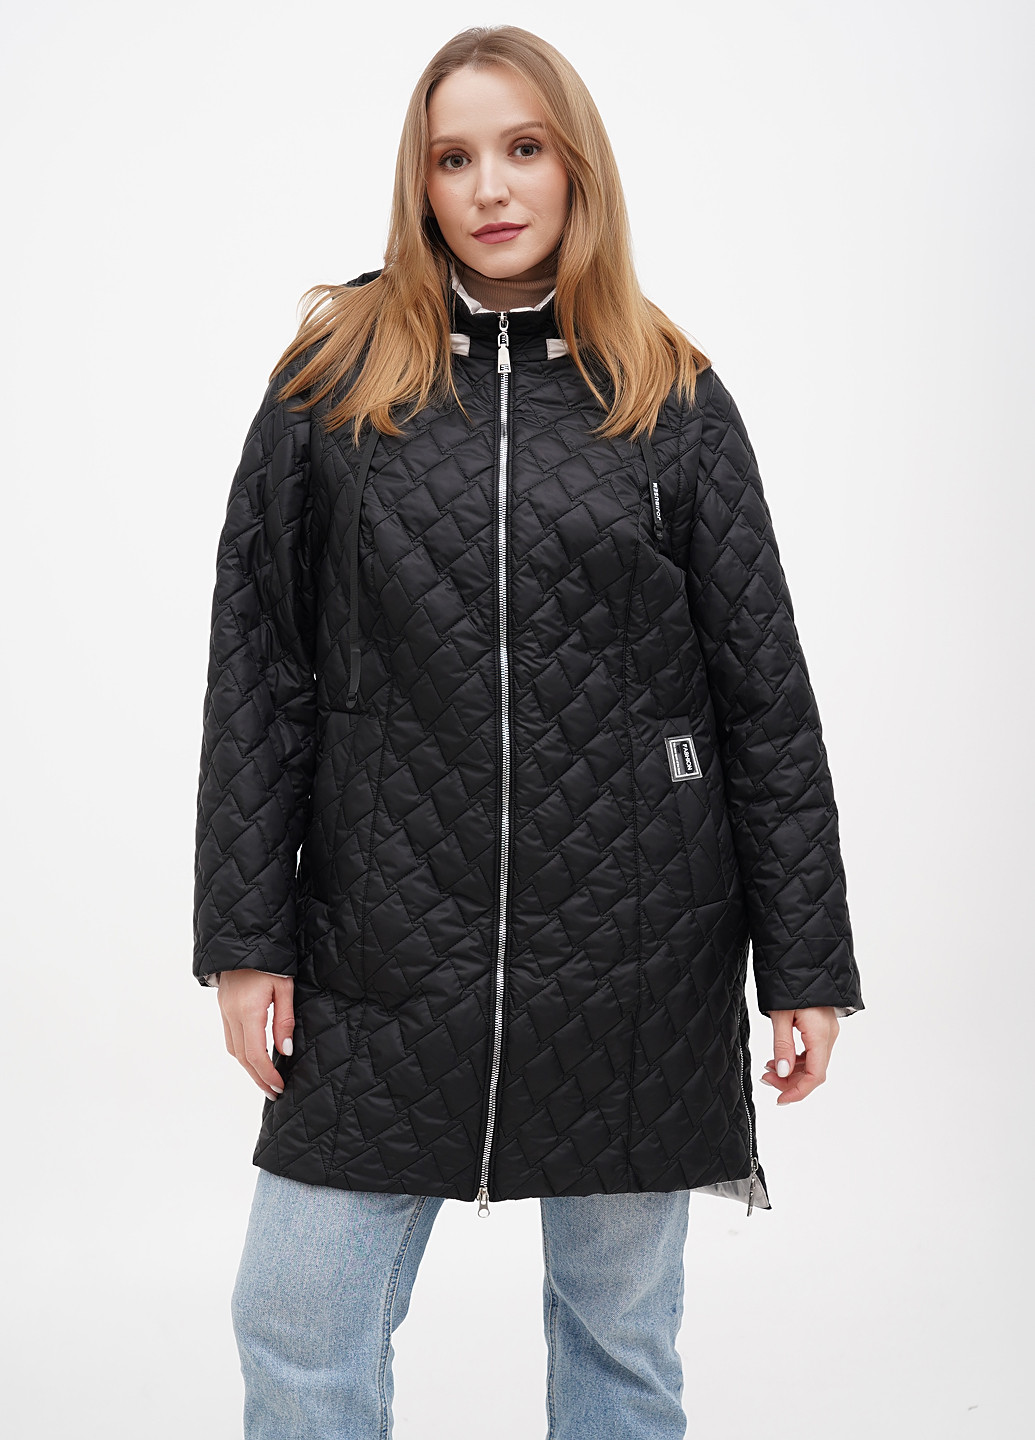 Черная демисезонная куртка куртка-трансформер Eva Classic